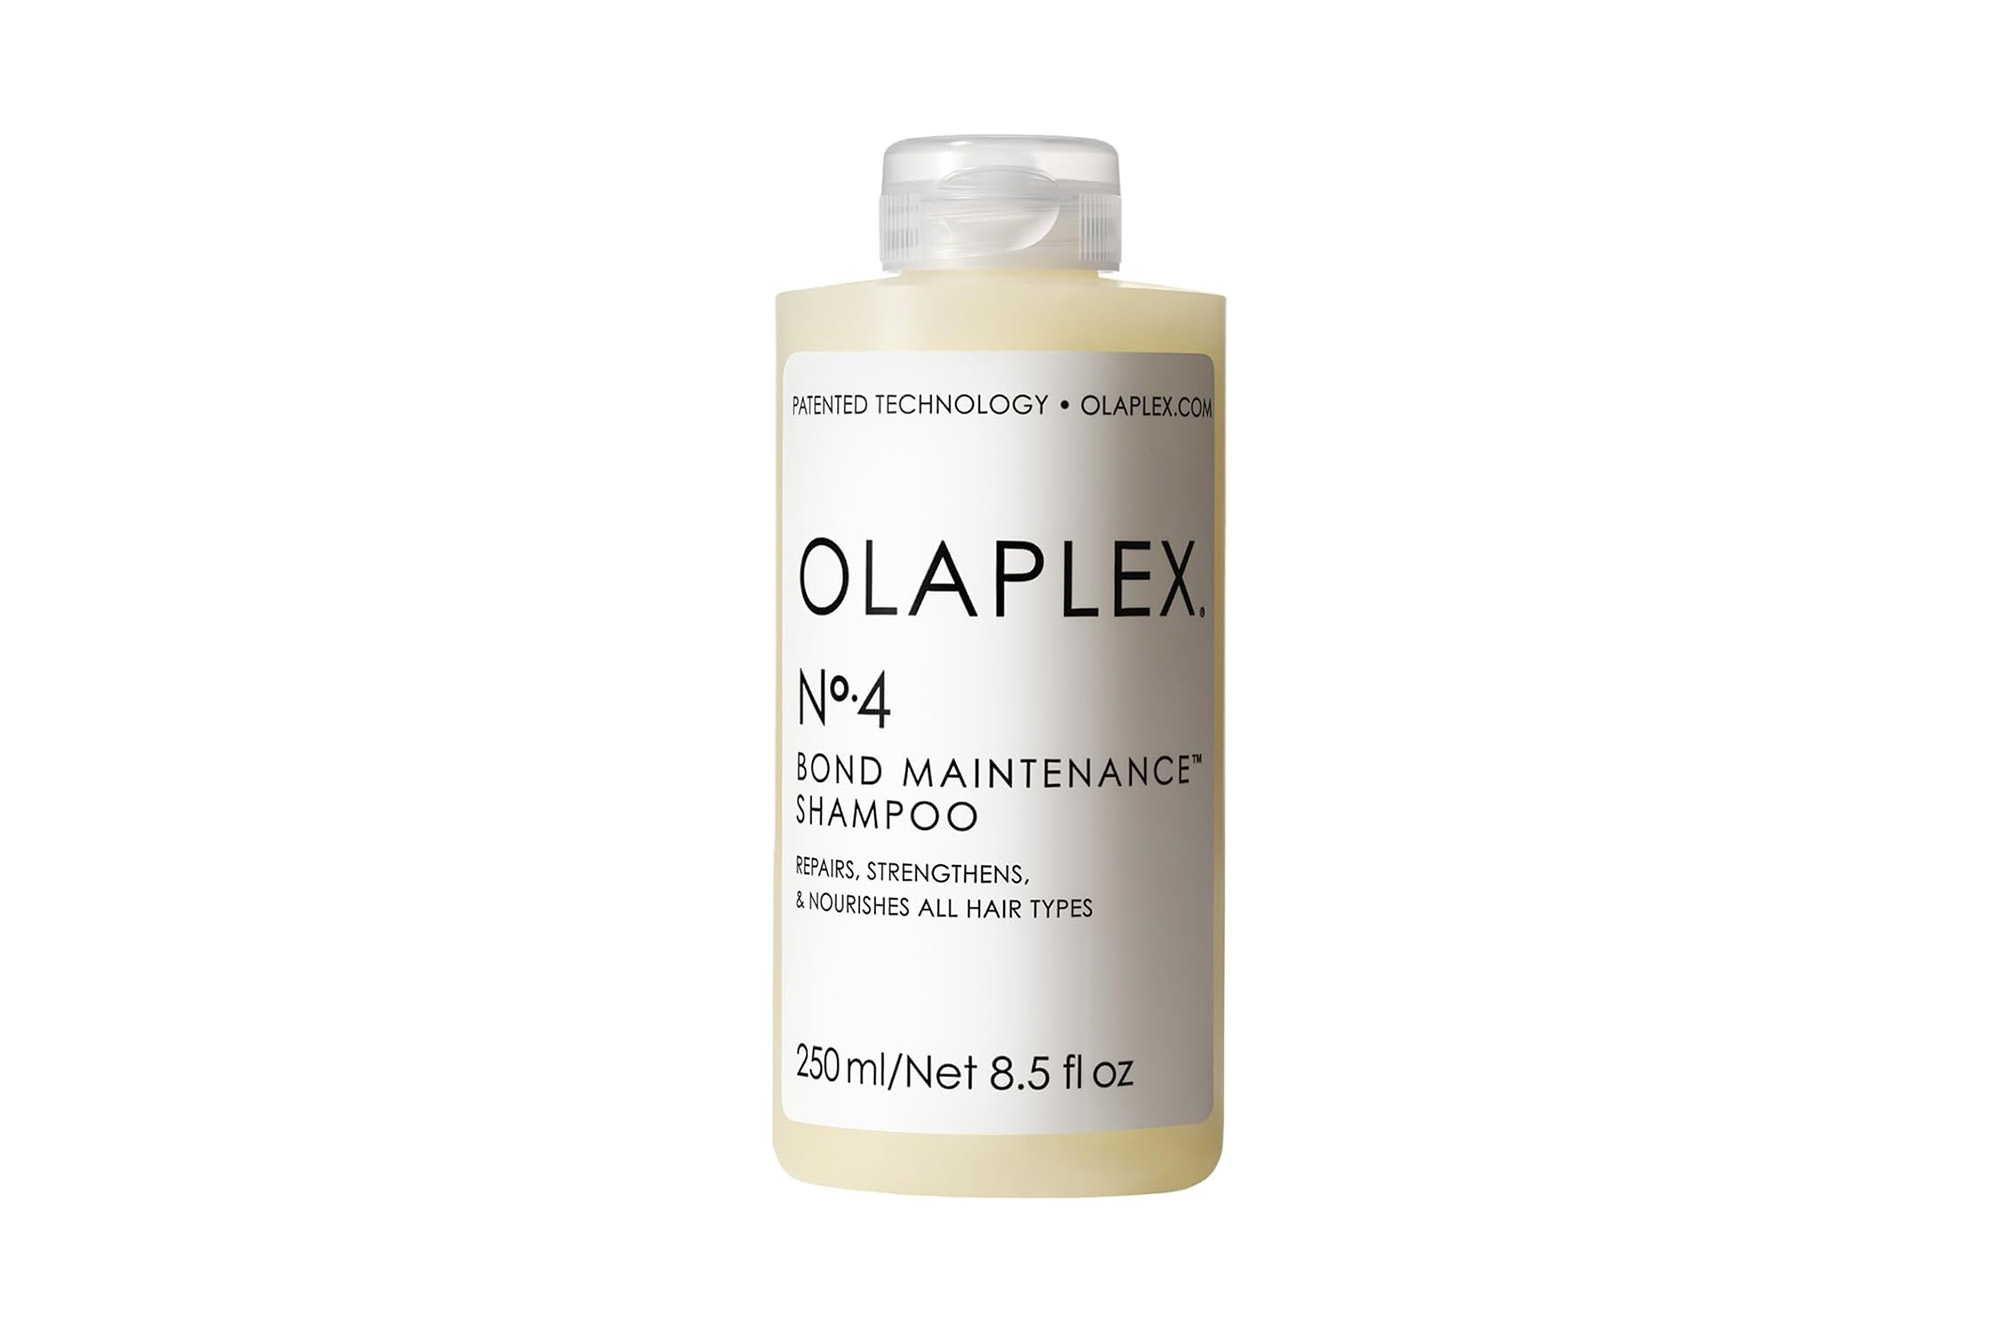 Olaplex No. 4 shampoo